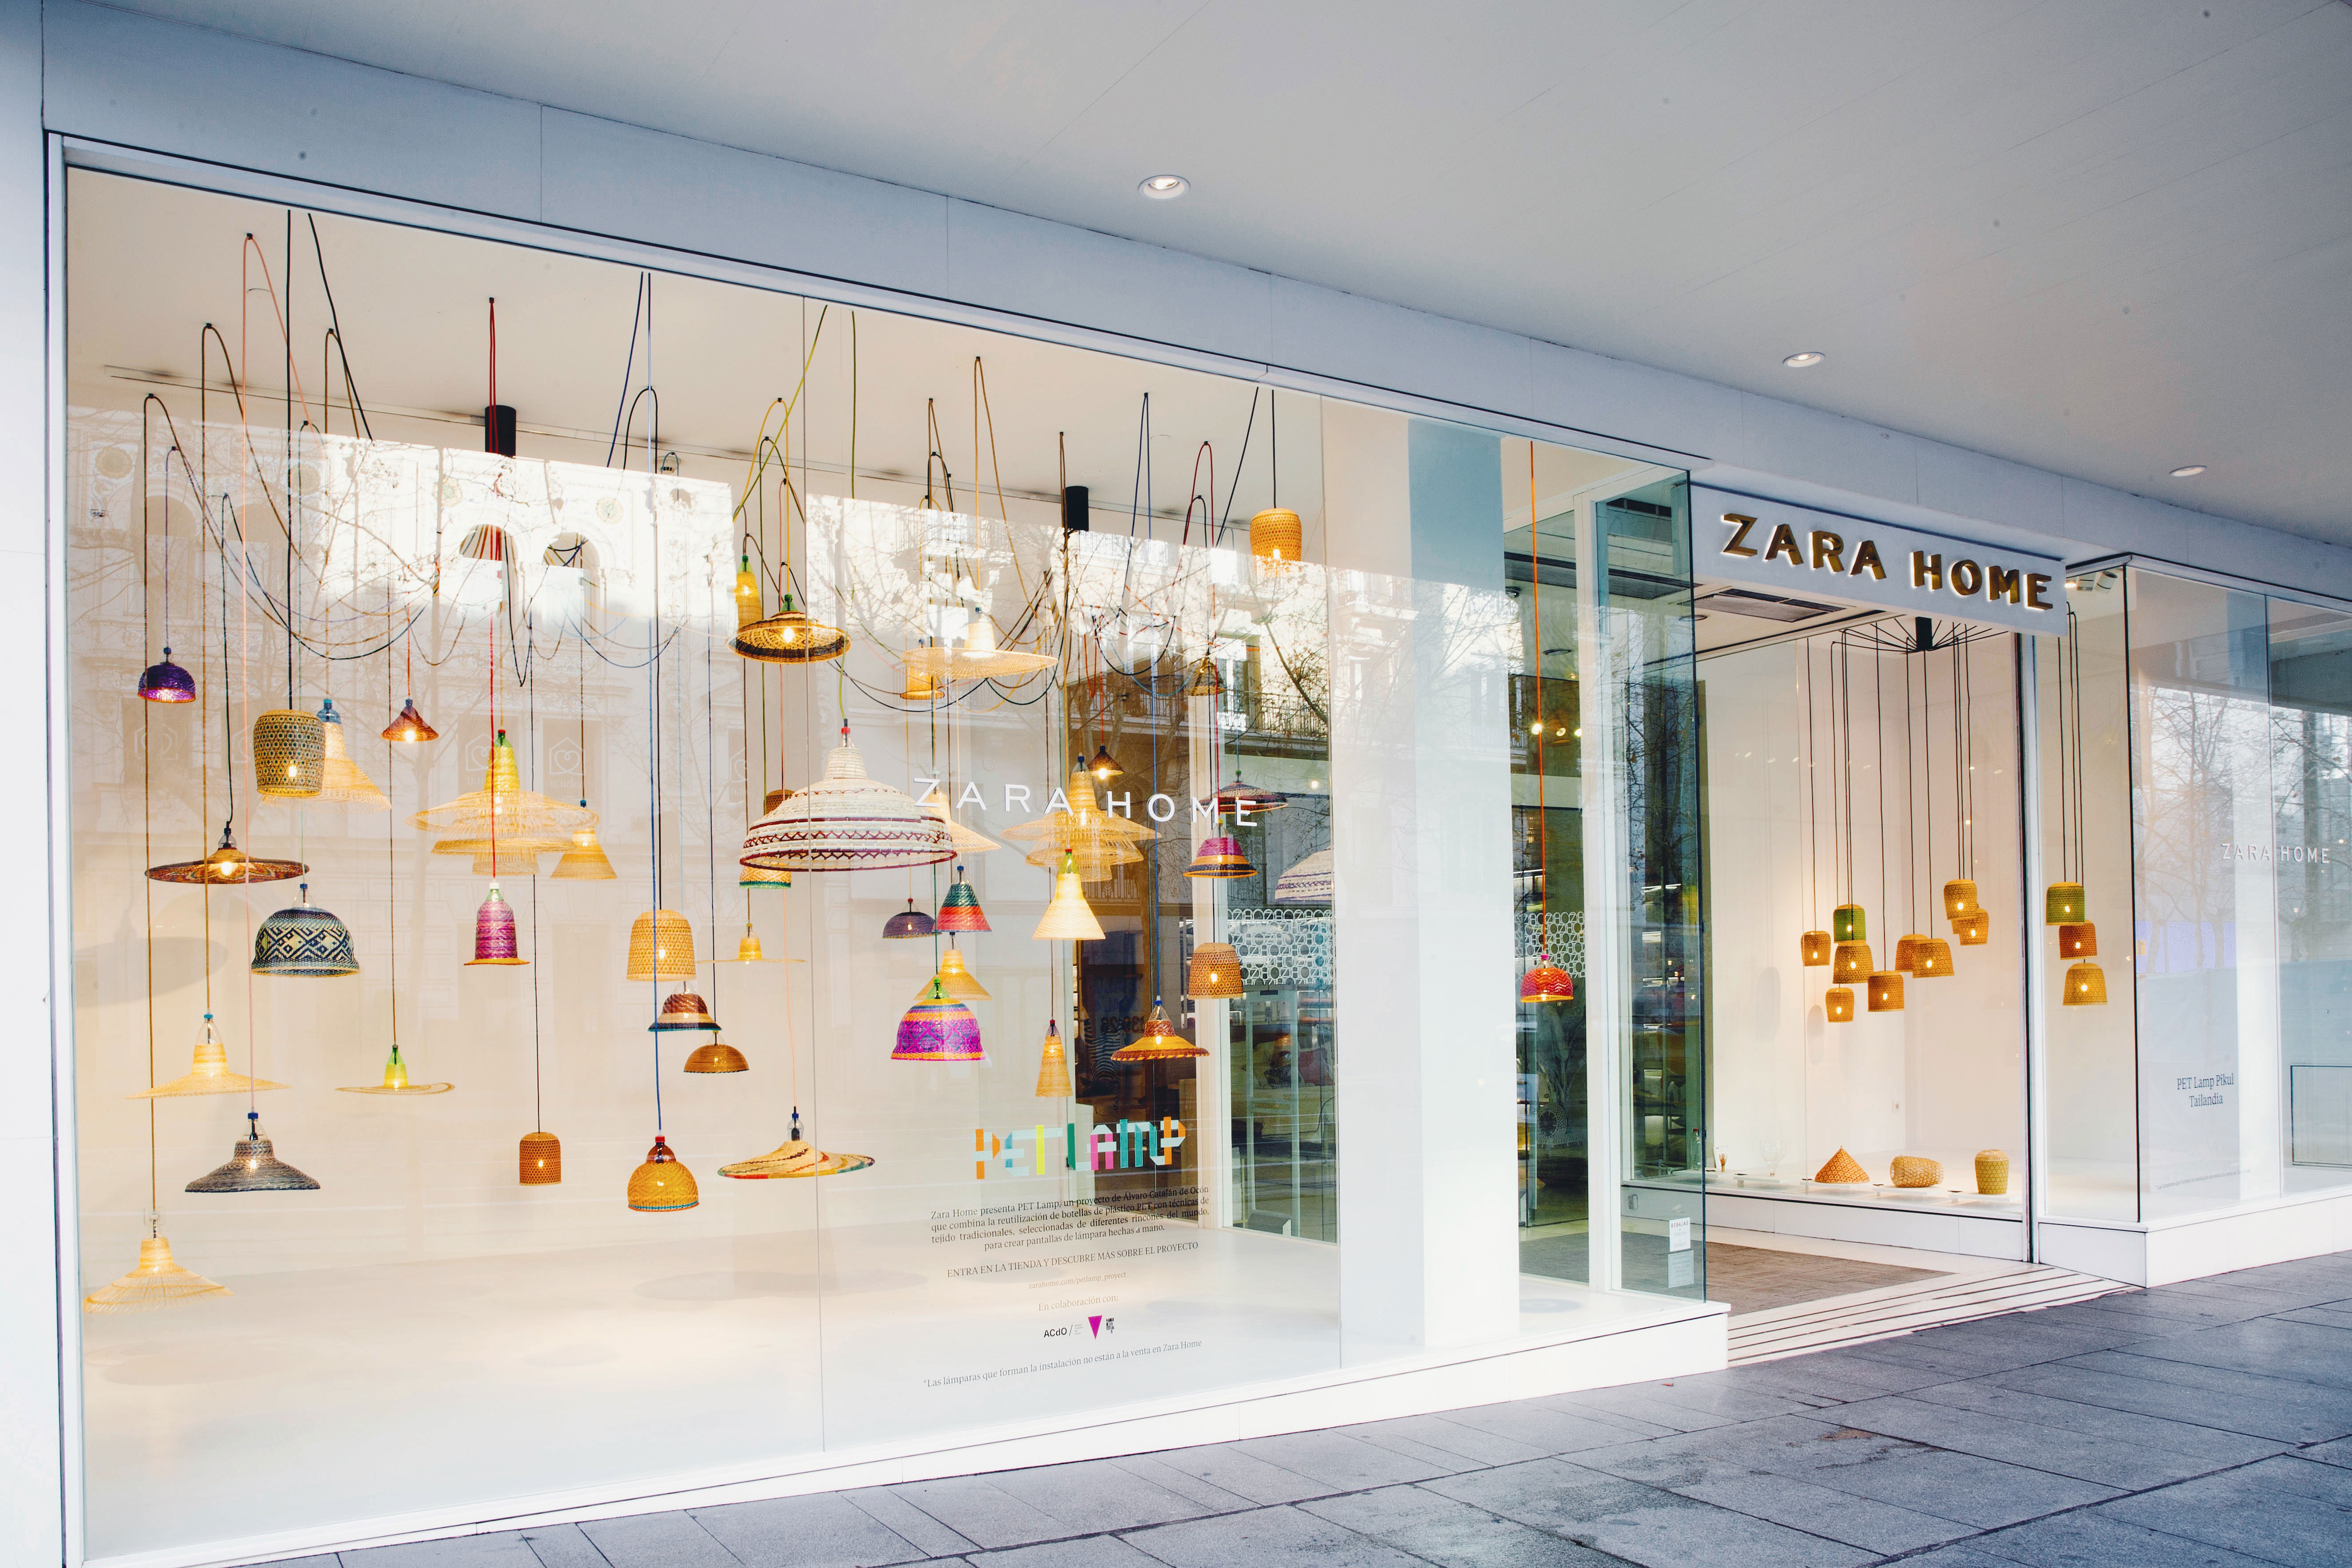 PET LAMPS at Zara Home shop. Photo: Courtesy of Acdo